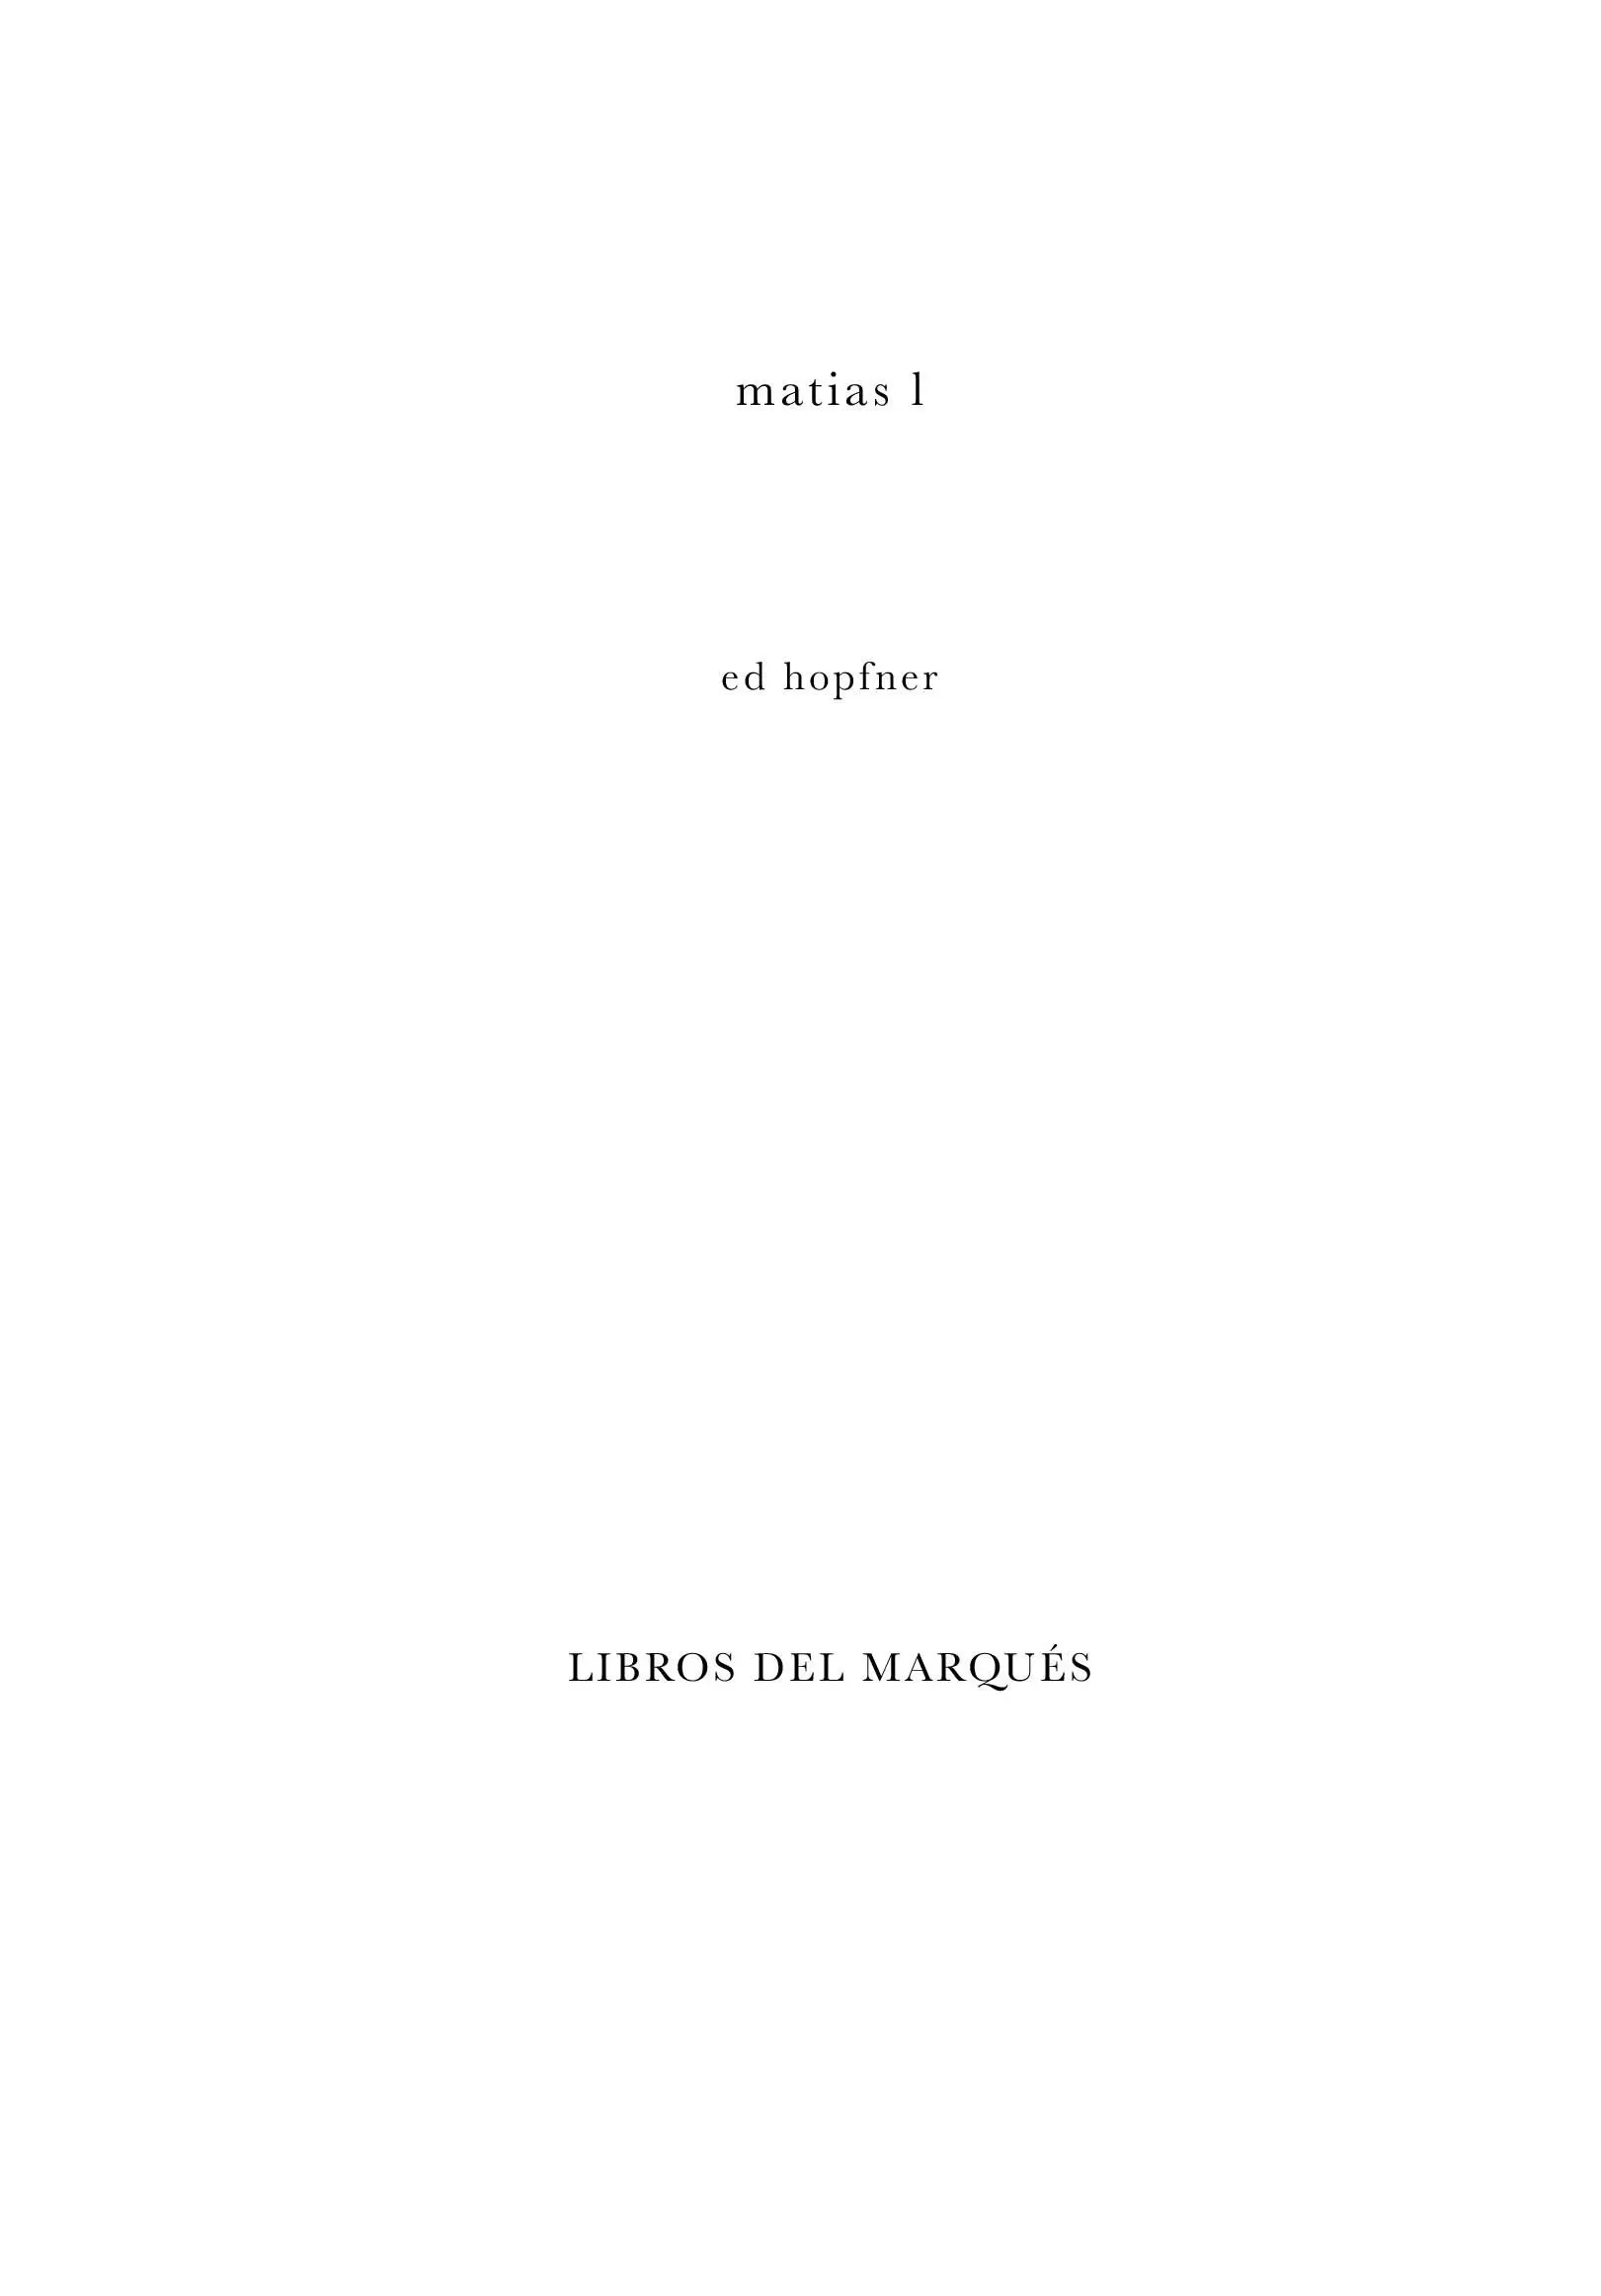 matias l DR Libros del Marques 2019 DR Eduardo Barba Hopfner 2019 - фото 1